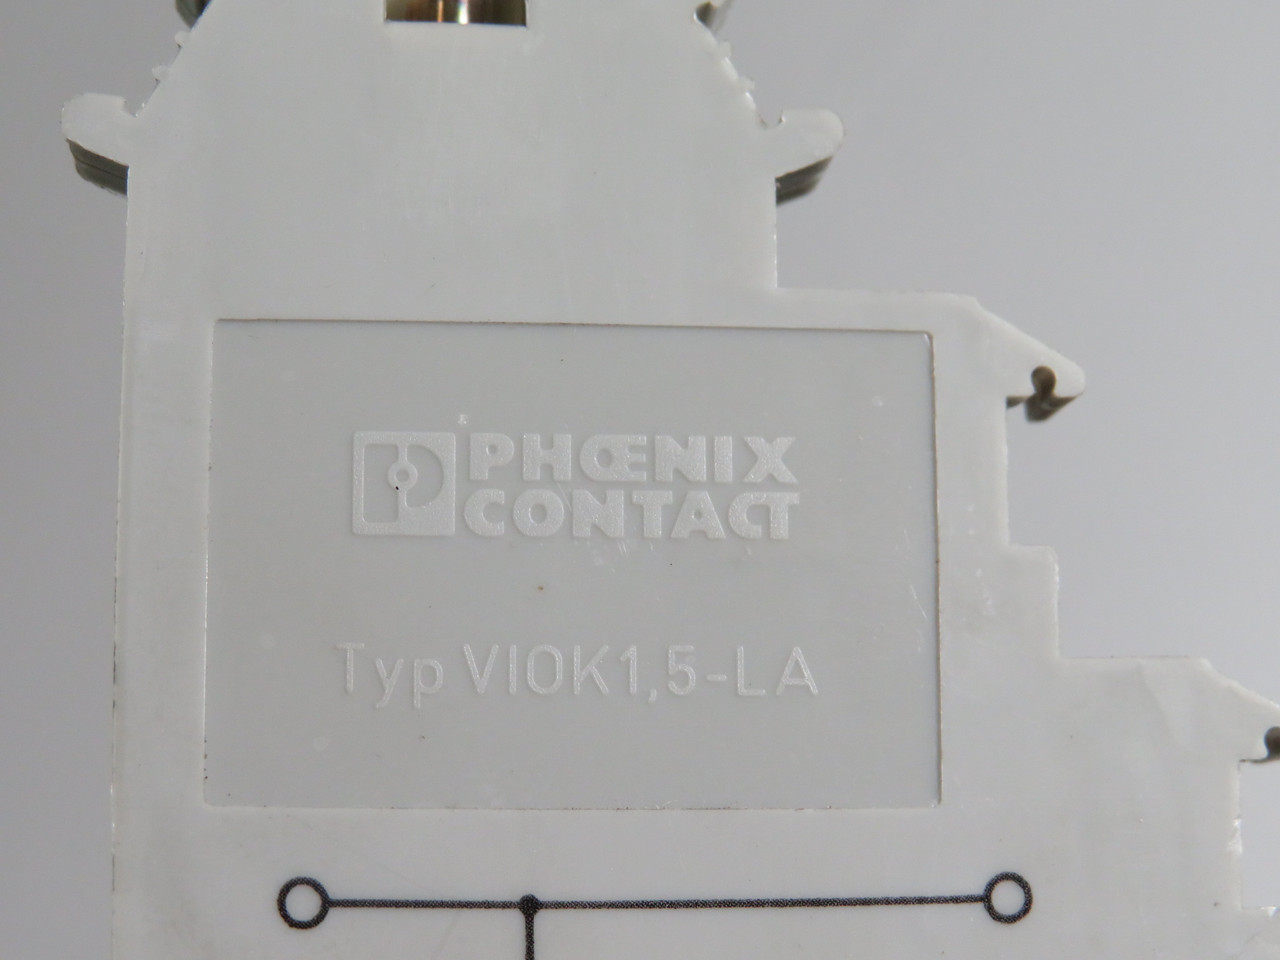 Phoenix Contact VIOK1,5-LA Sensor/Actuator Terminal Block 2.5mm 250V USED